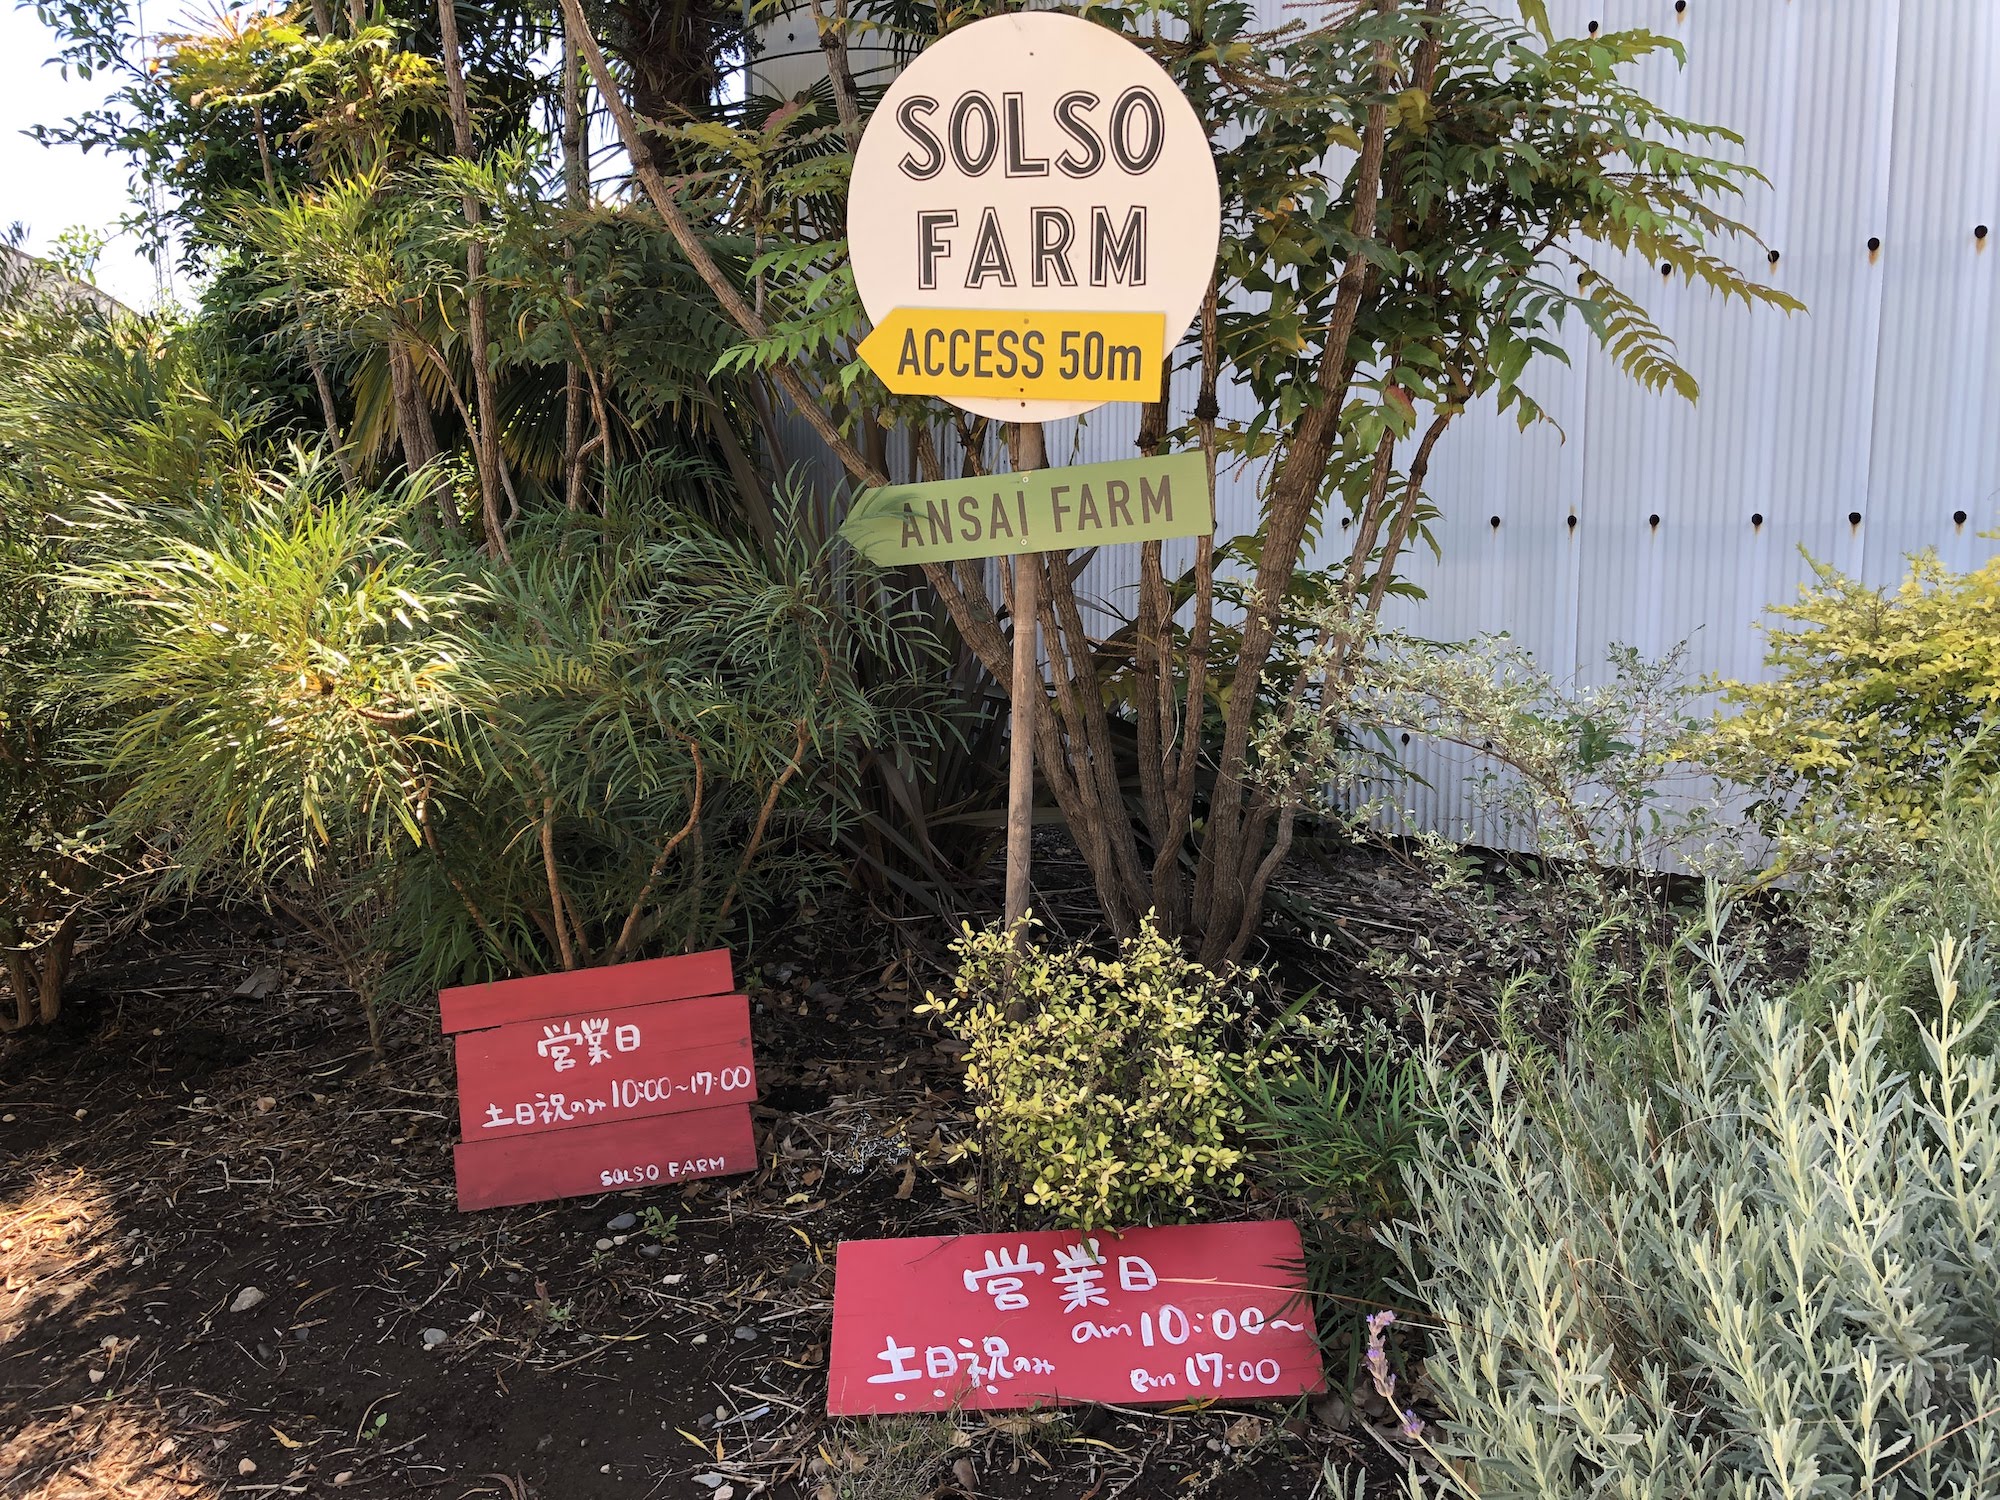 ソルソファーム Solso Farm 川崎は植物テーマパークのよう かわさき新聞